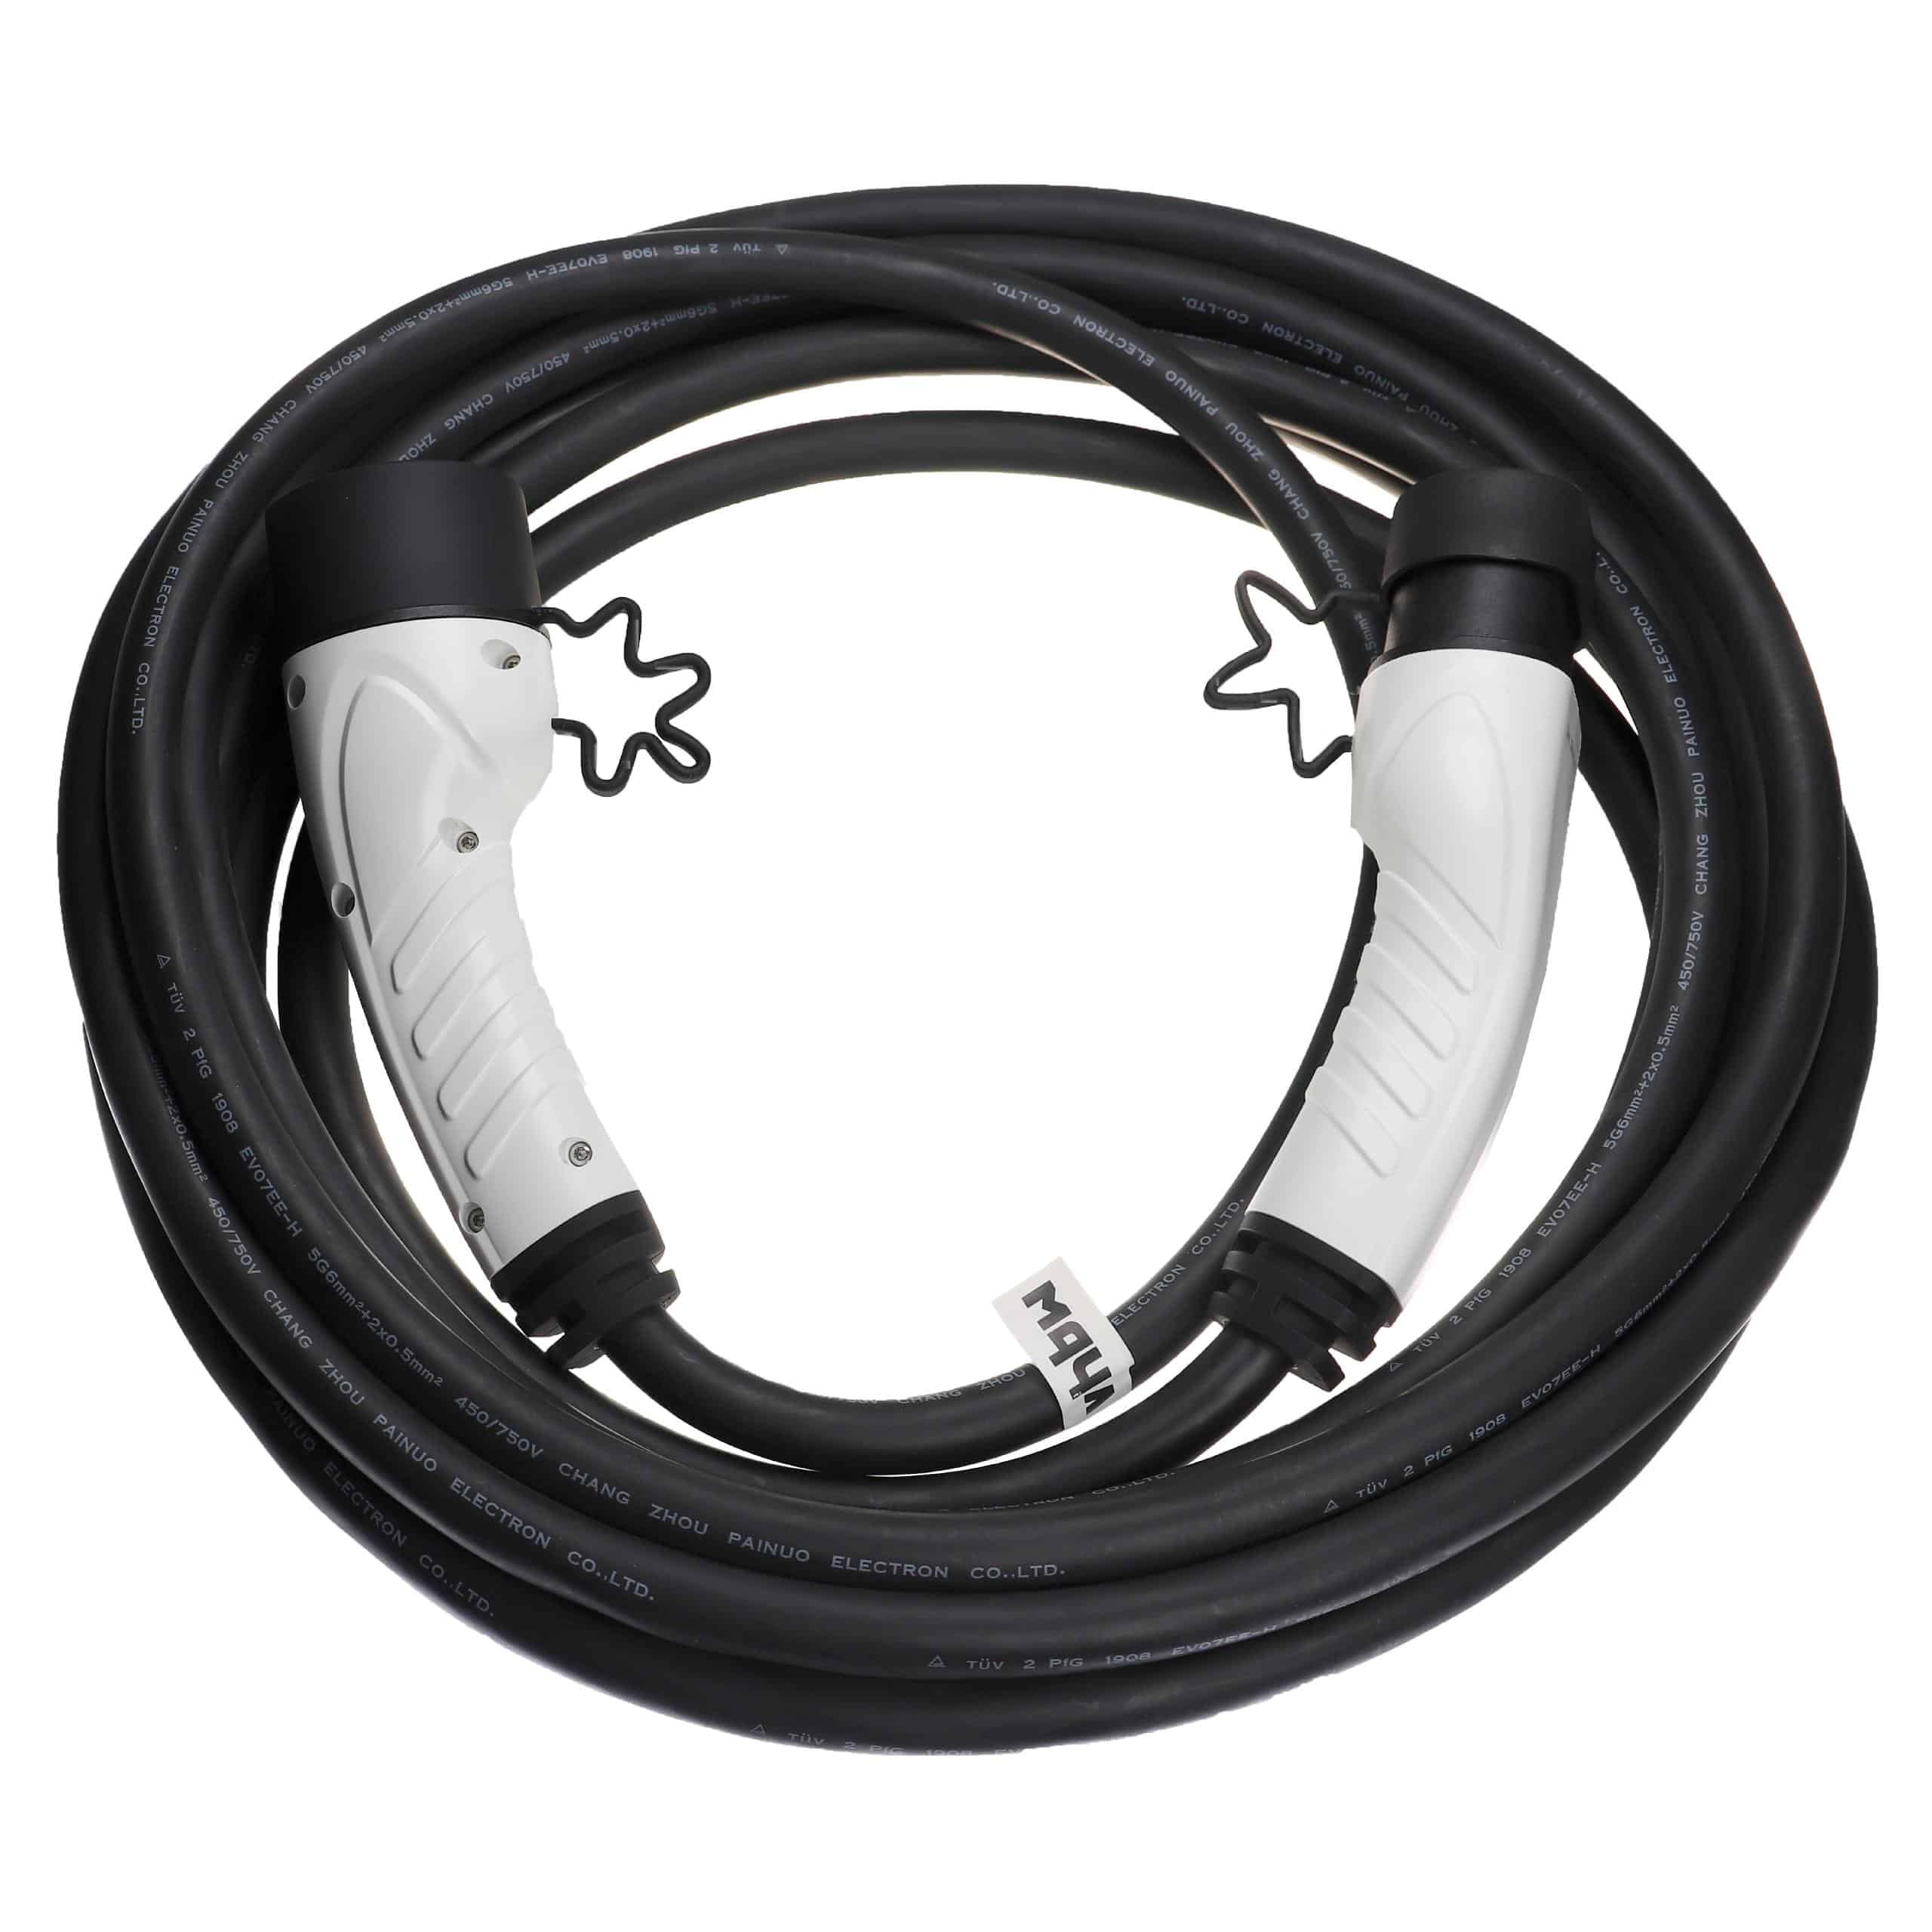 Kabel do ładowania samochodu elektrycznego - typ 2 do typ 2, 3-fazowy, 32 A, 22 kW, 10 m